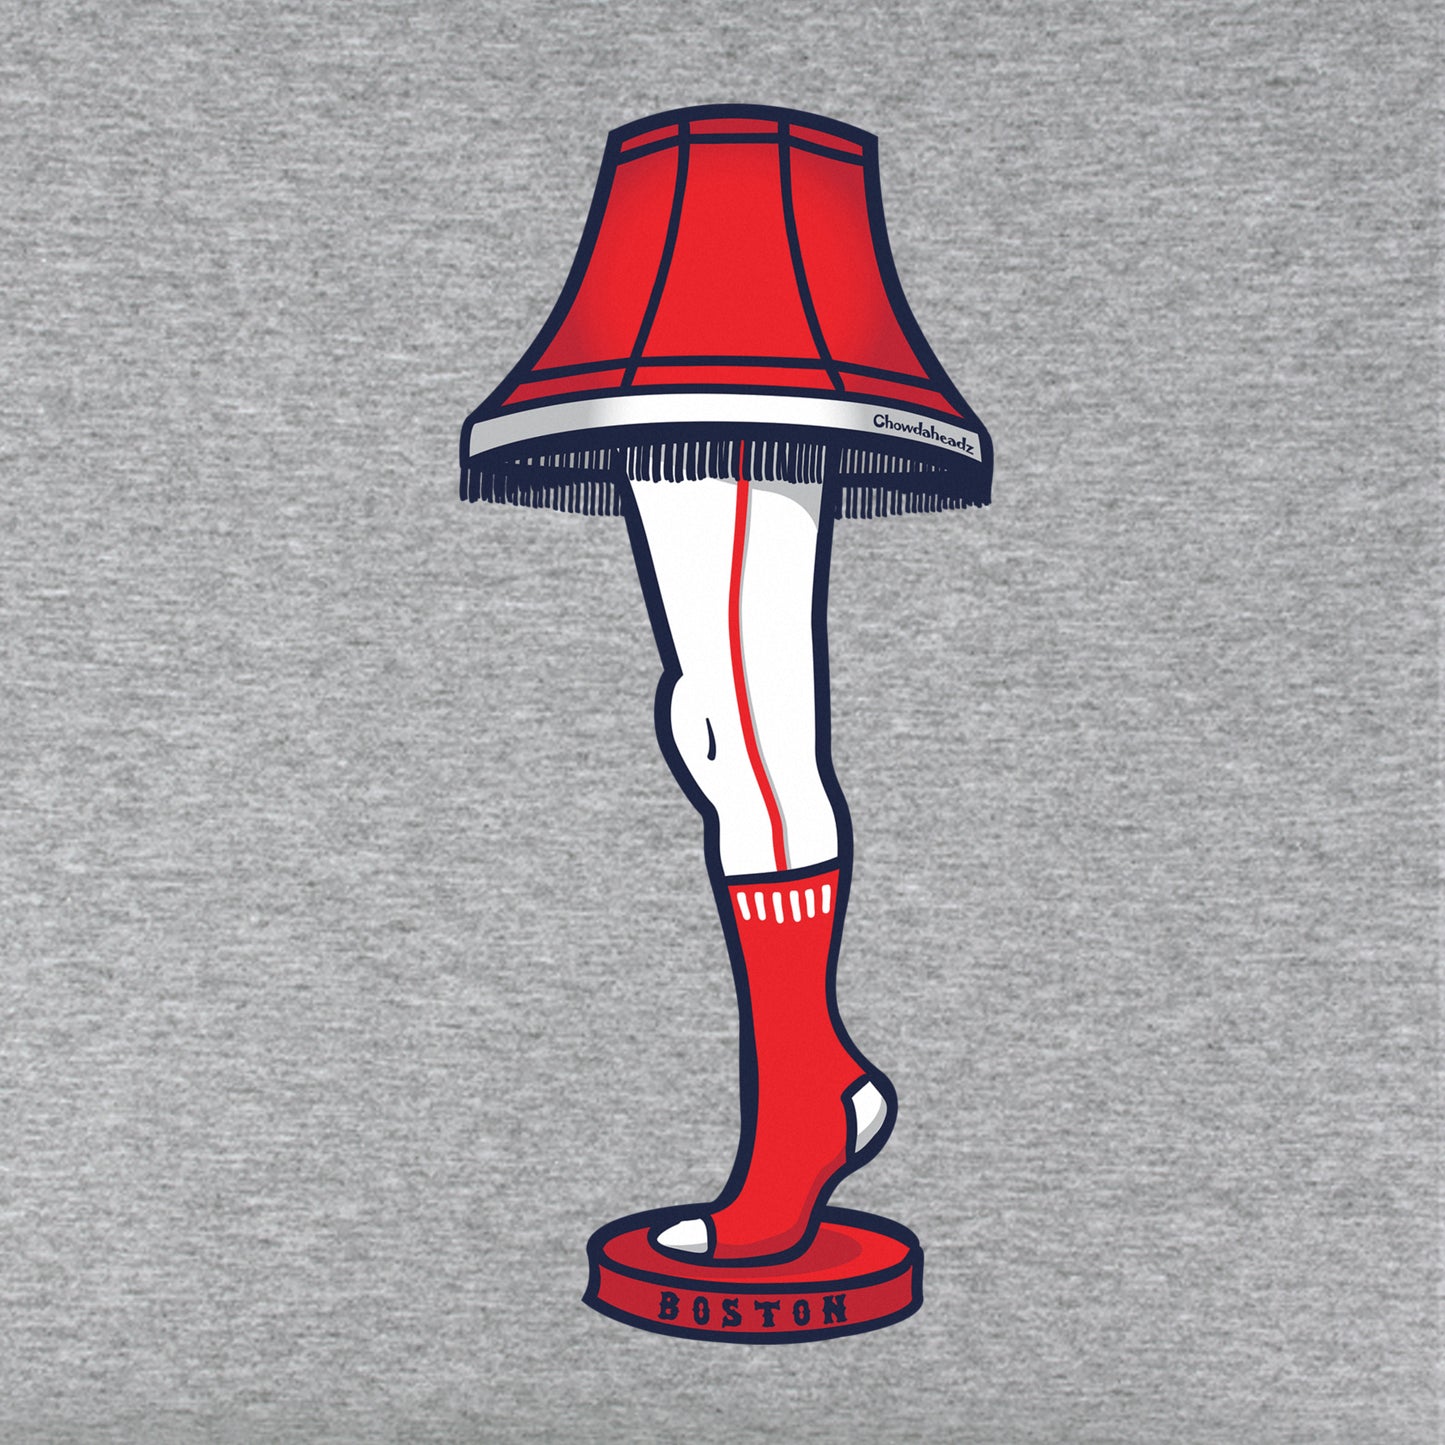 Boston Holiday Leg Lamp Youth T-Shirt - Chowdaheadz